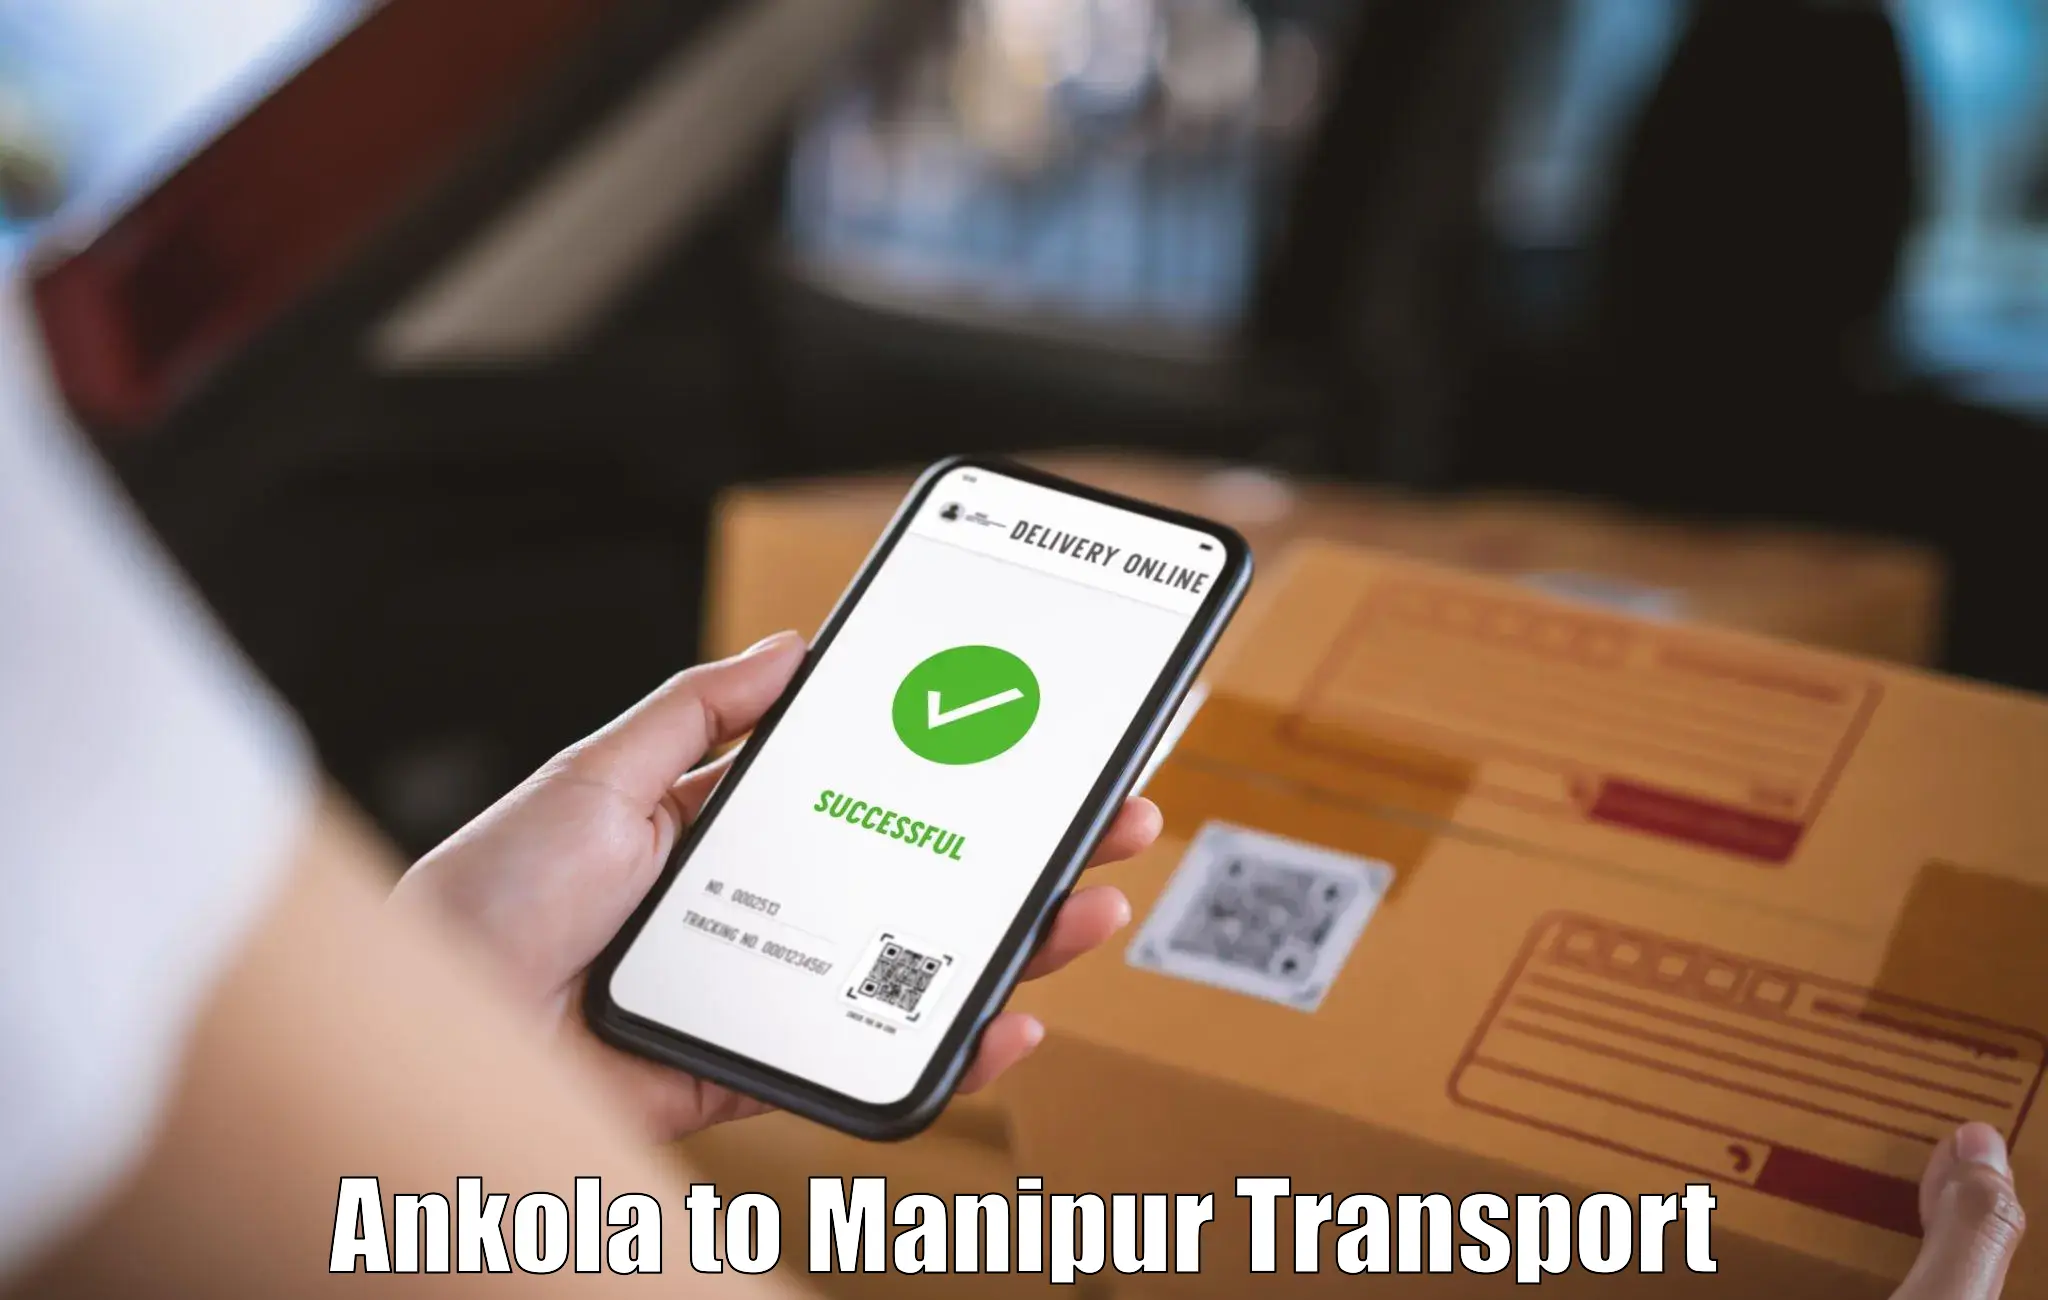 Vehicle transport services Ankola to Churachandpur